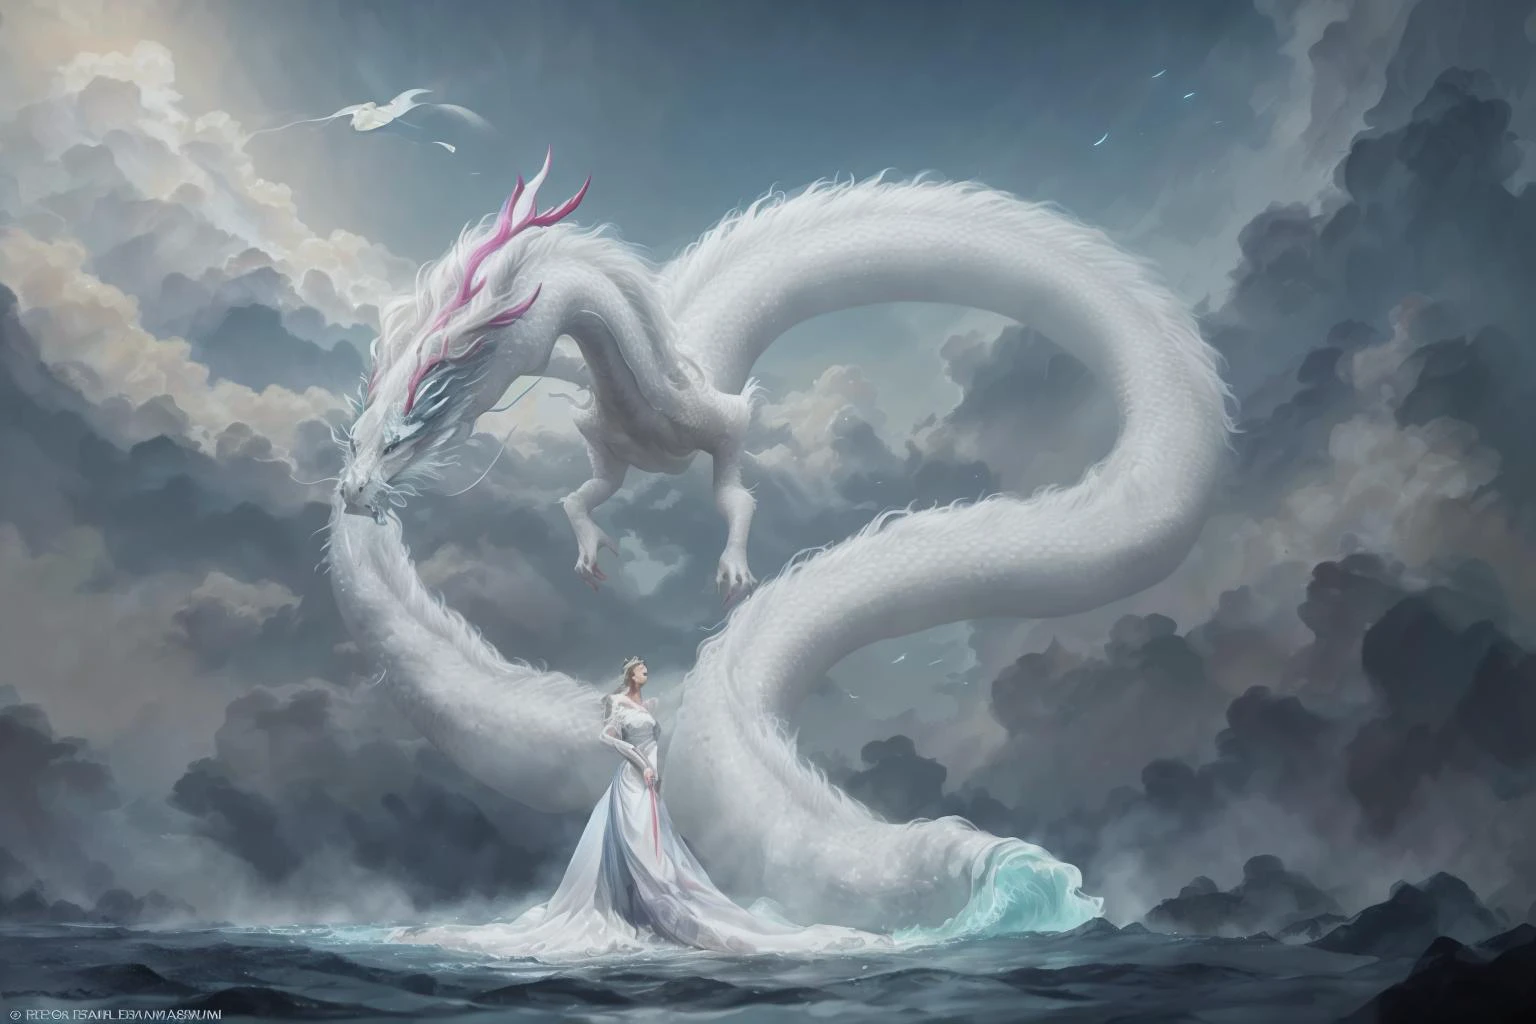 Dans une image captivante, une femme élégante vêtue d&#39;une robe chinoise blanche glisse dans le ciel au sommet d&#39;un dragon chinois mythique. Alors qu&#39;ils traversent les cieux, sa robe fluide et les écailles irisées du dragon créent une vision fascinante d&#39;harmonie et de beauté surnaturelle. 
hdr, (photoréalisme, qualité de chef-d&#39;œuvre, meilleure qualité), , pureerosface_v1,ulzzang-6500-v1.1,